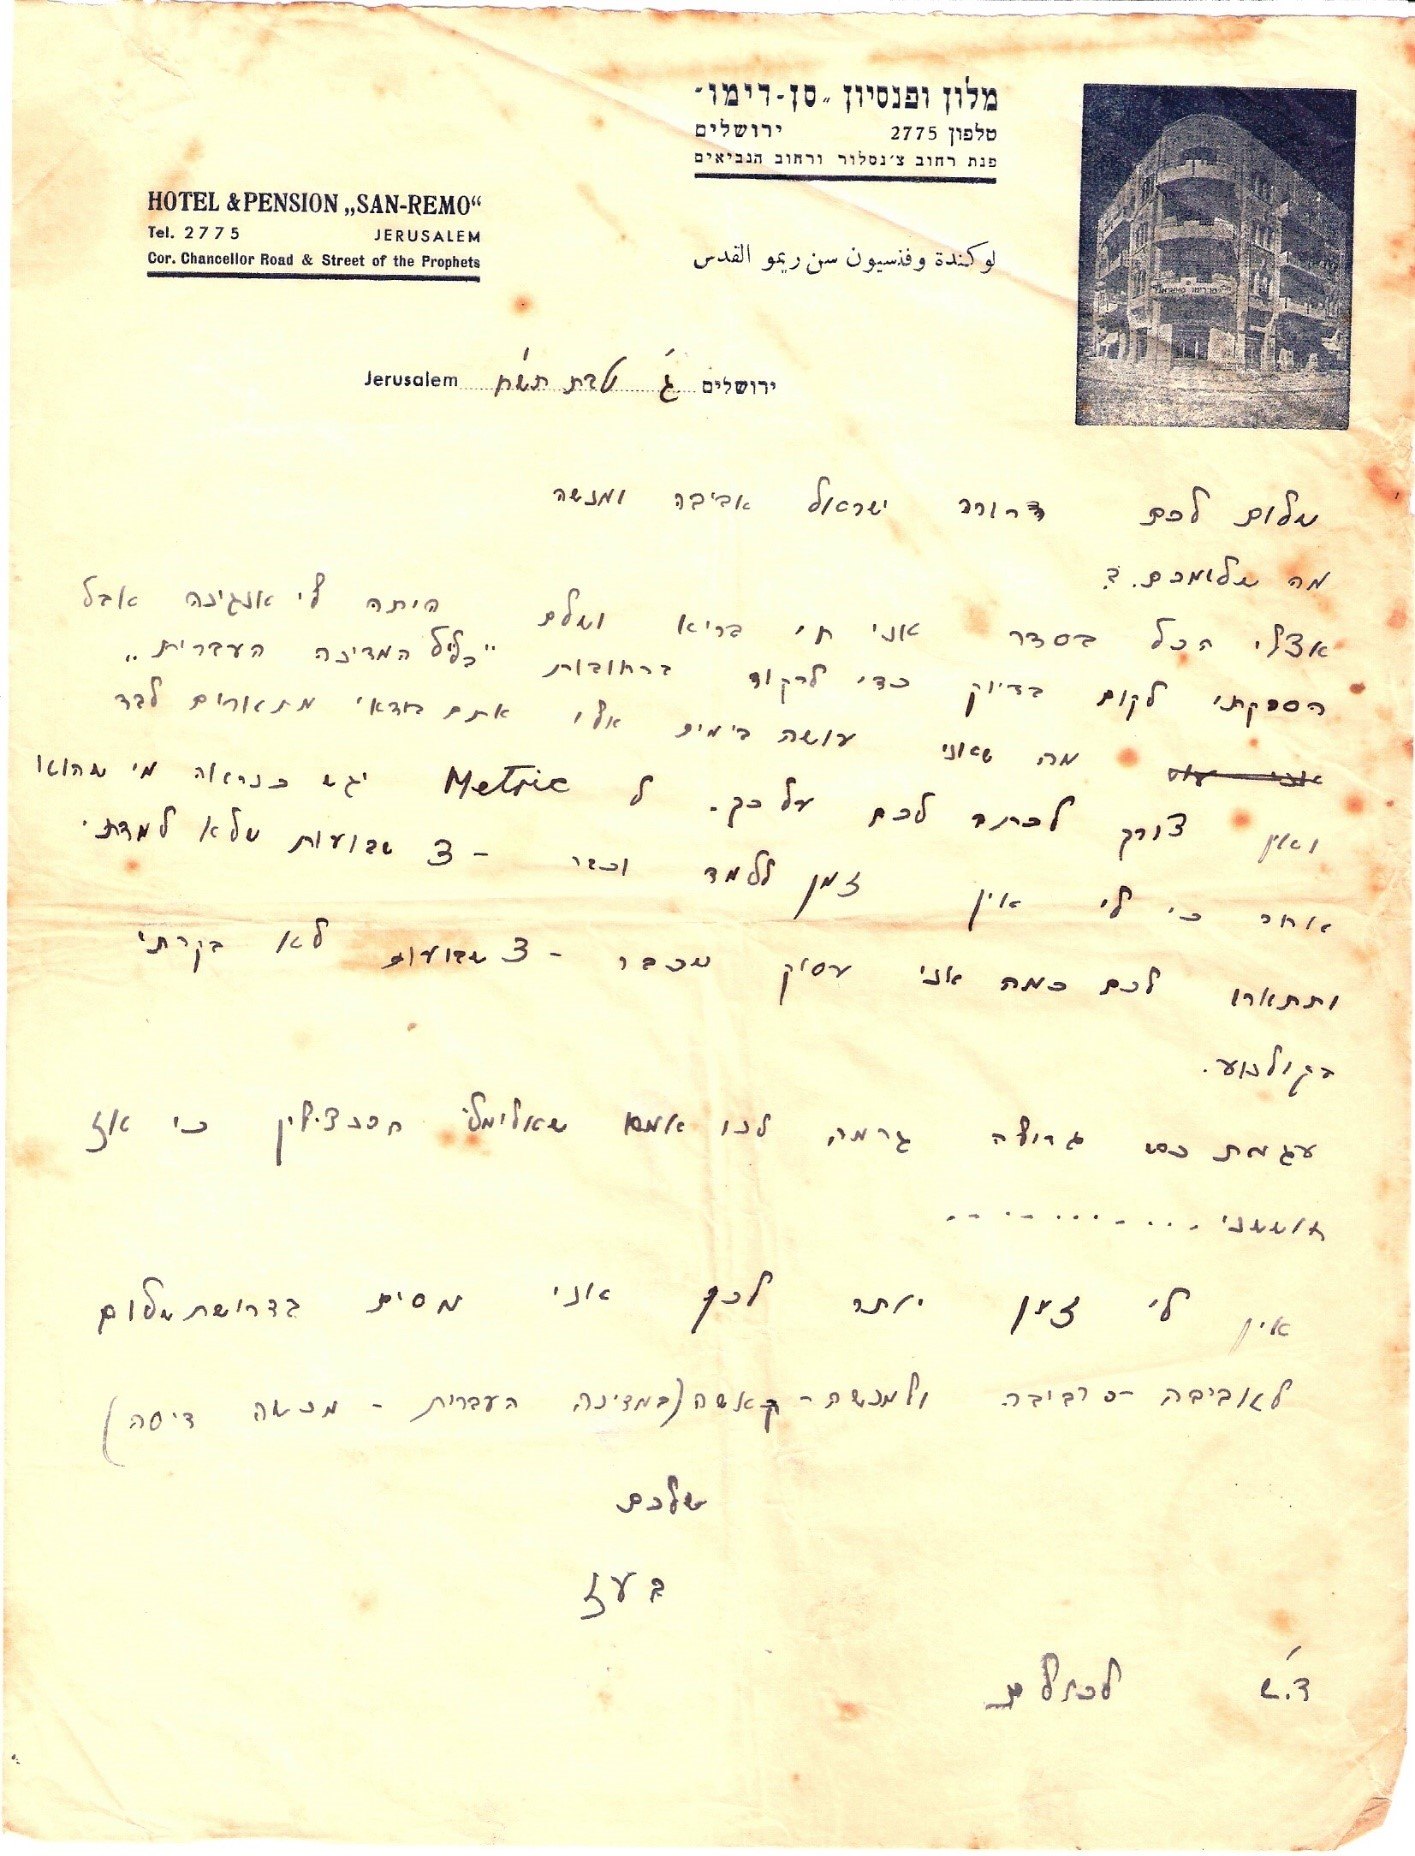 מכתב מירושלים הנצורה. "הספקתי לקום כדי לרקוד ברחובות בליל המדינה העברית"